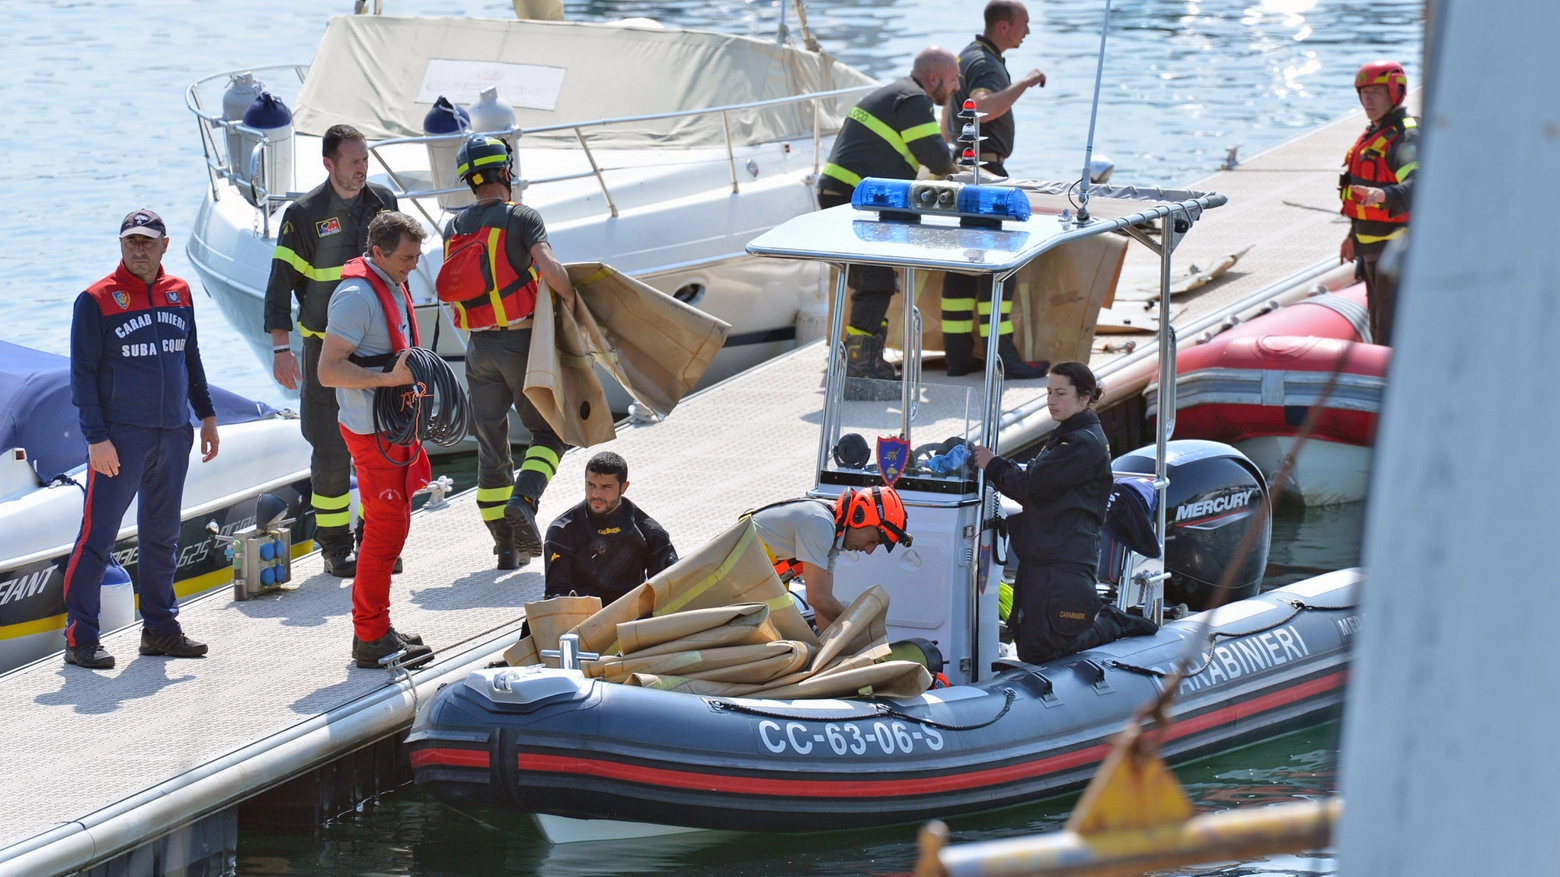 Le operazioni di recupero sul lago Maggiore